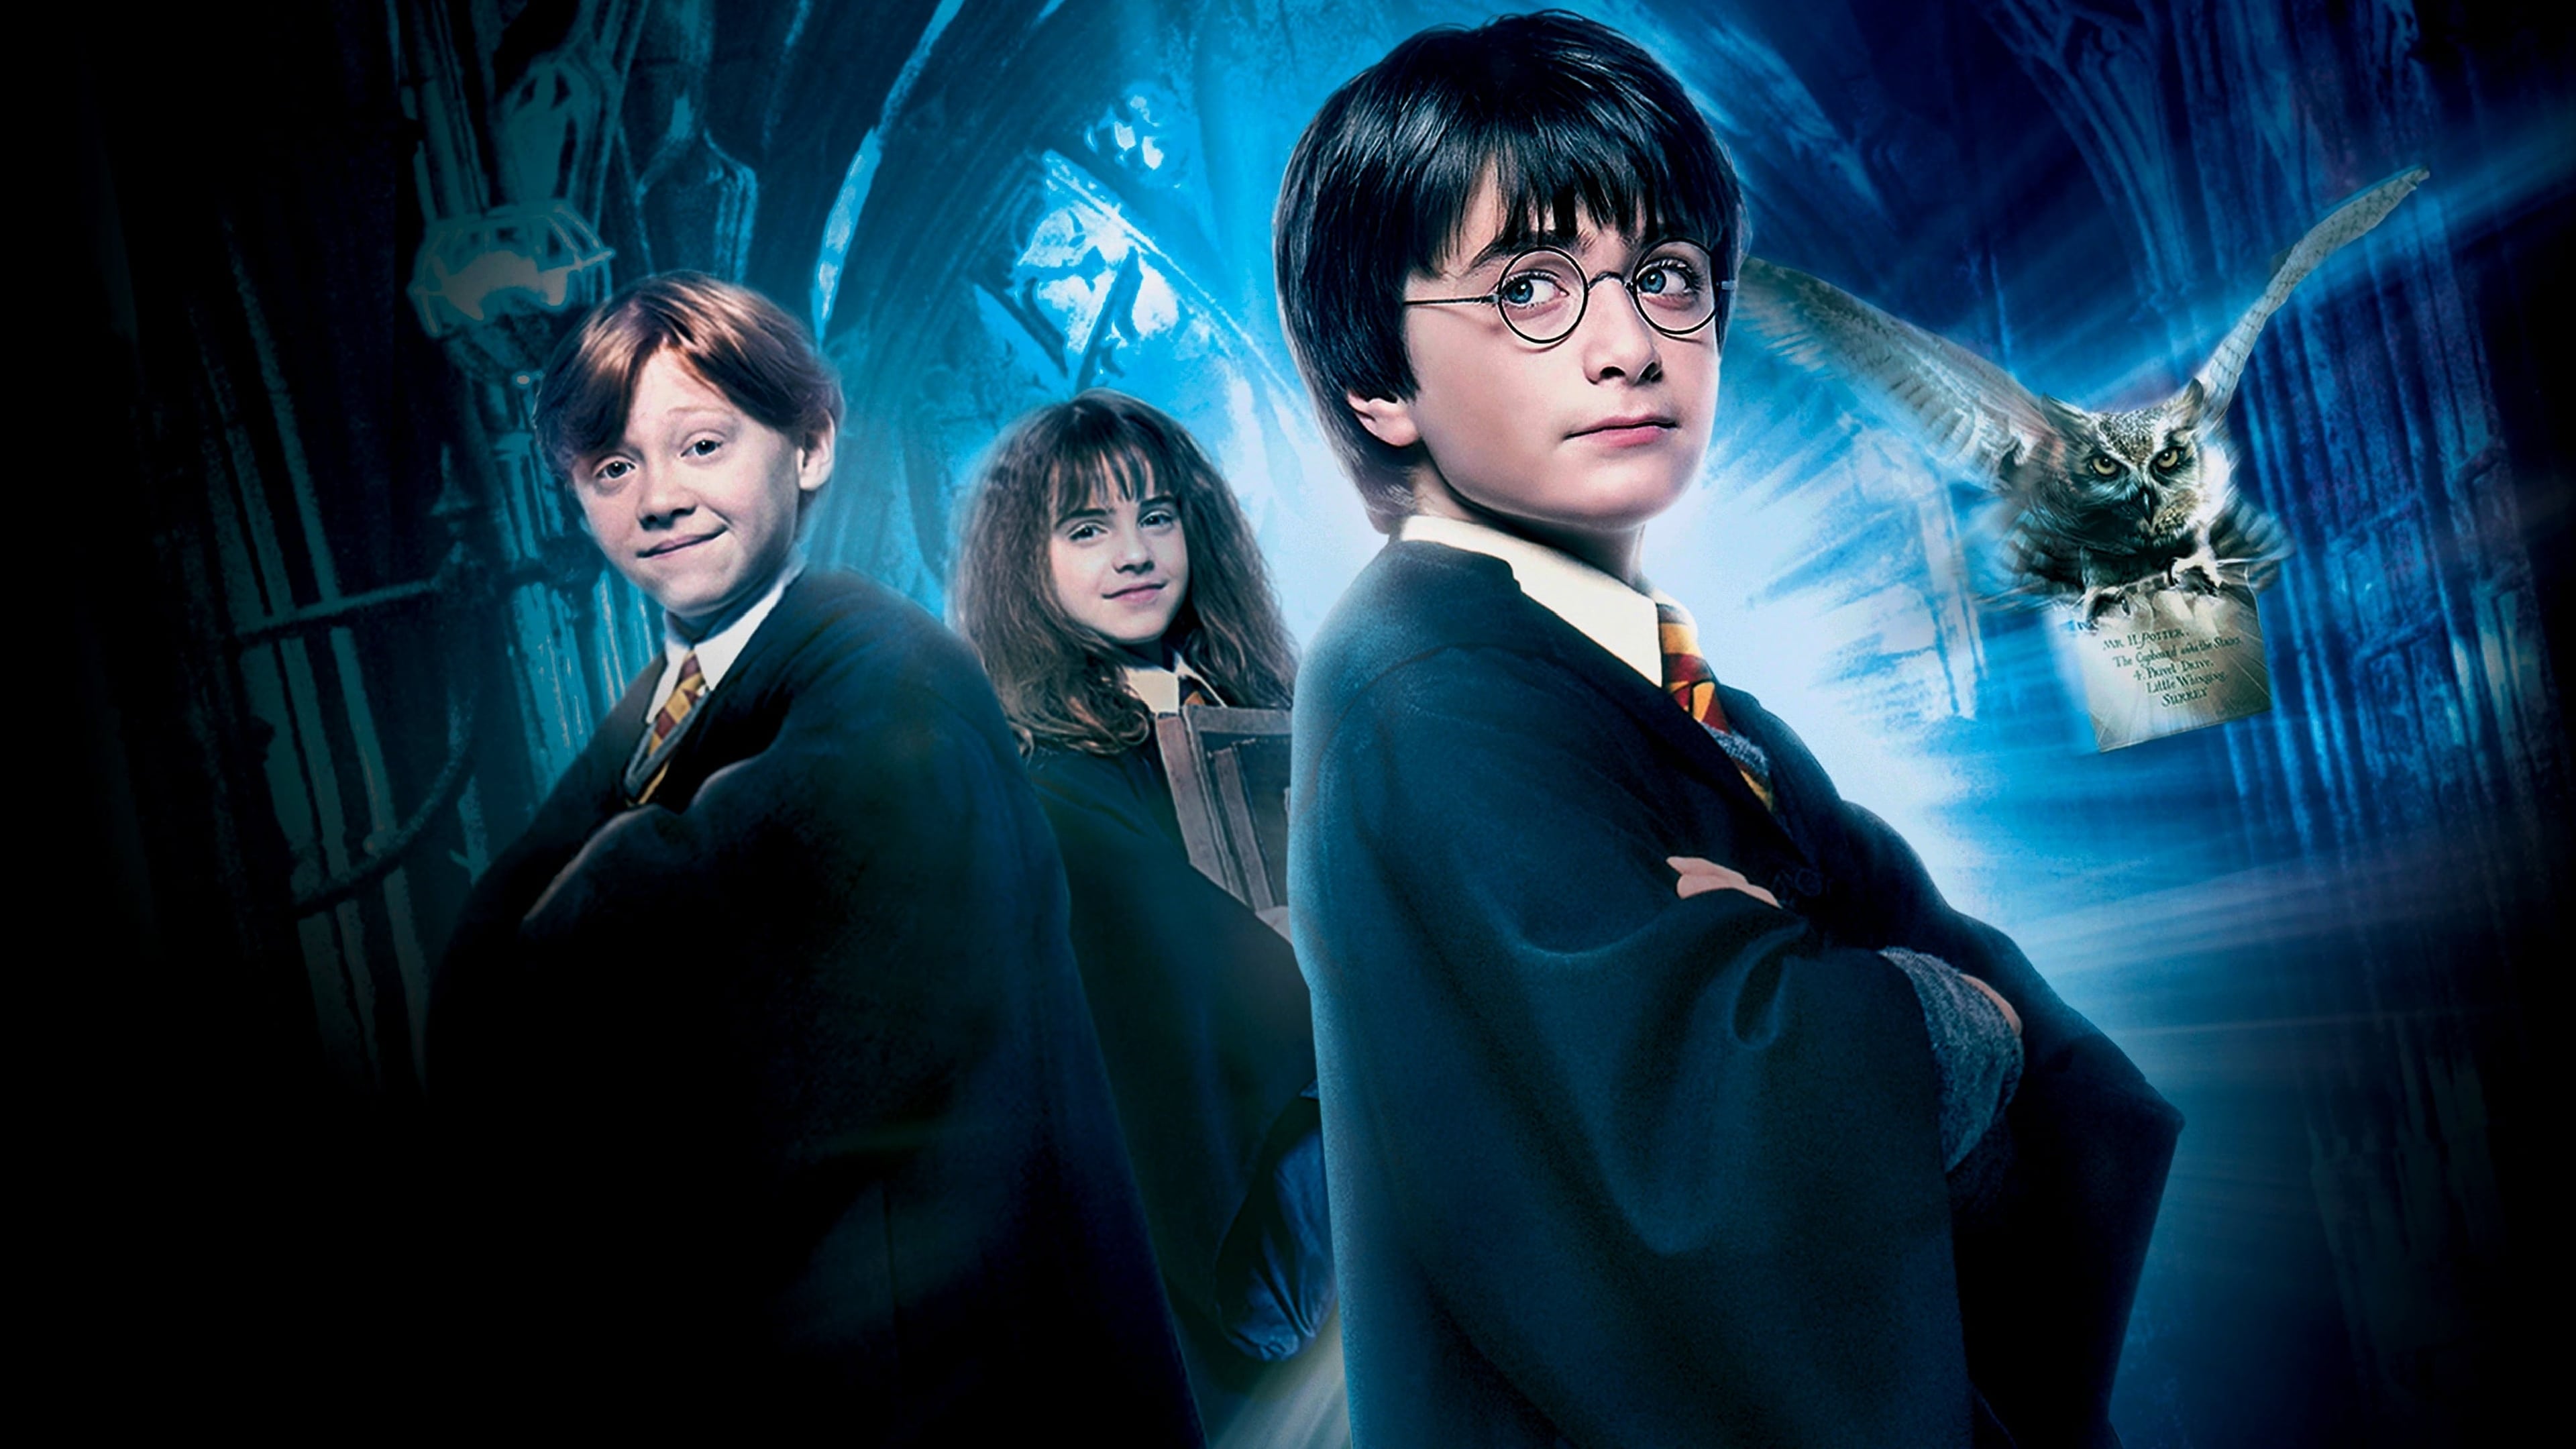 Image du film Harry Potter à l'école des sorciers (version longue) em8ivisecbv50znlikk9pnmpxoxjpg